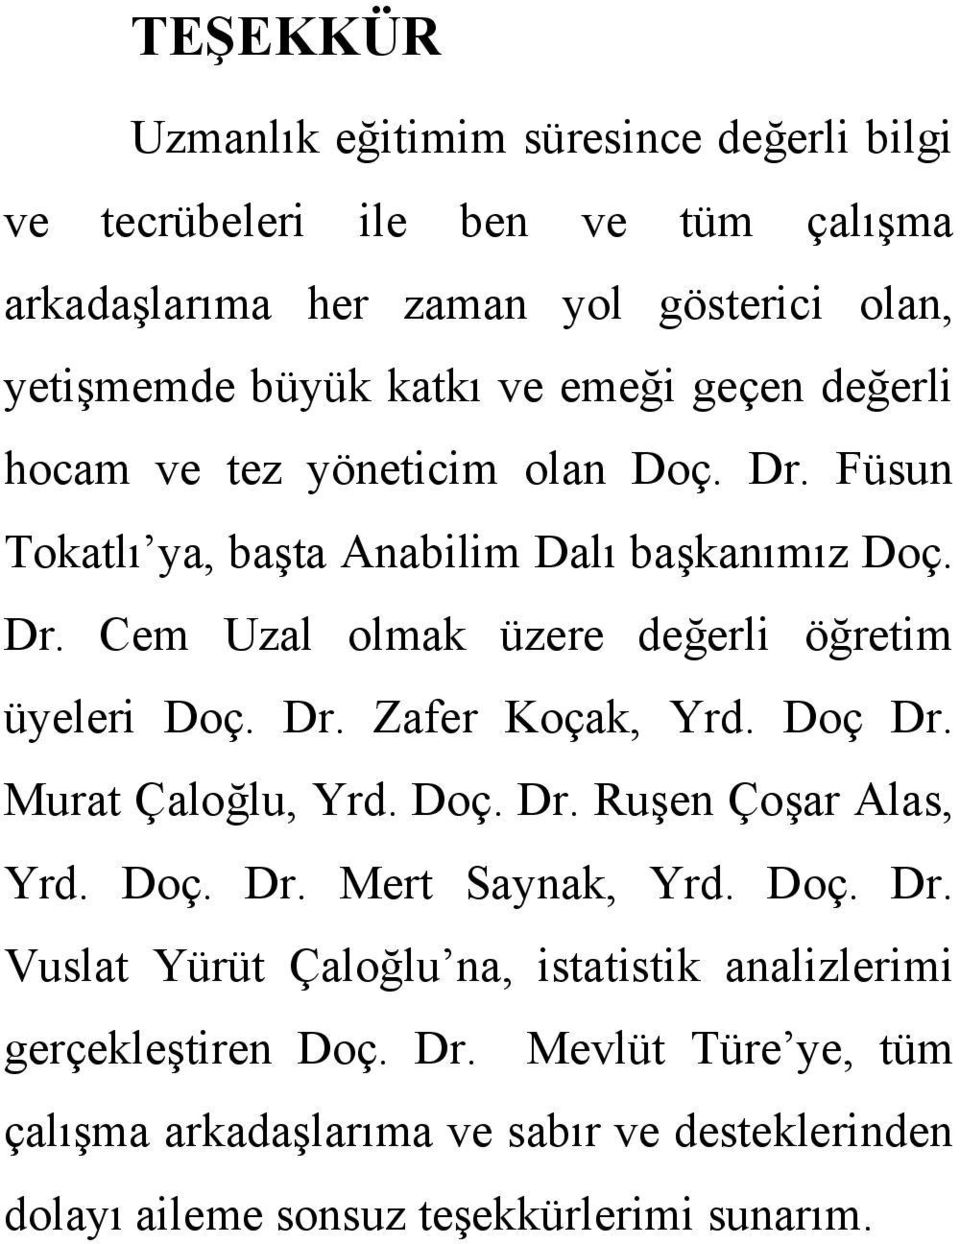 Dr. Zafer Koçak, Yrd. Doç Dr. Murat Çaloğlu, Yrd. Doç. Dr. Ruşen Çoşar Alas, Yrd. Doç. Dr. Mert Saynak, Yrd. Doç. Dr. Vuslat Yürüt Çaloğlu na, istatistik analizlerimi gerçekleştiren Doç.